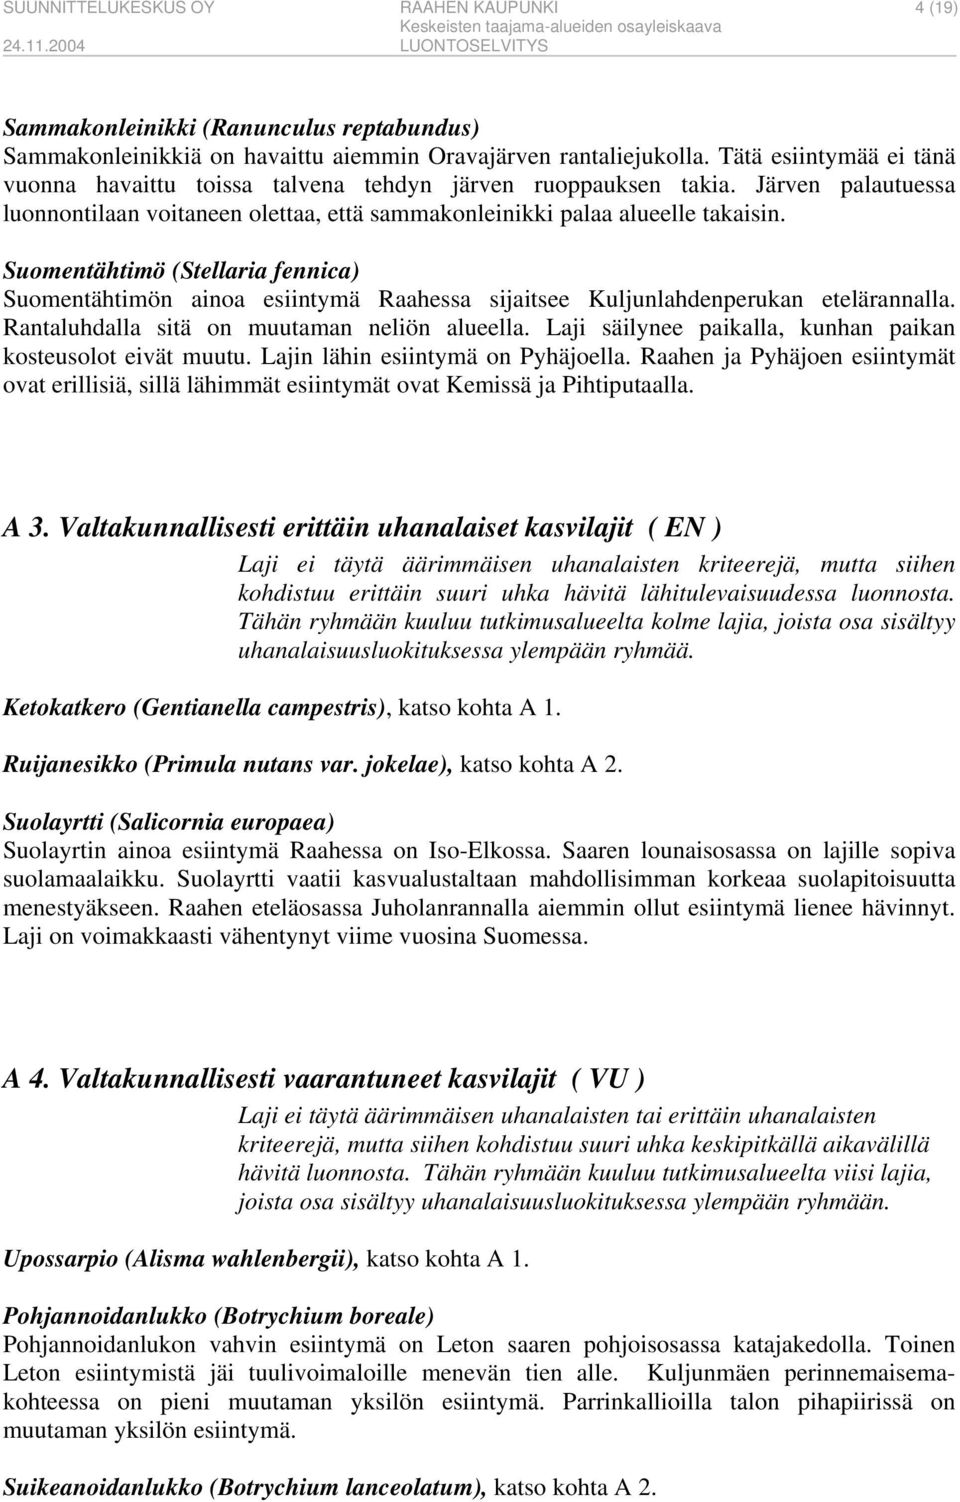 Suomentähtimö (Stellaria fennica) Suomentähtimön ainoa esiintymä Raahessa sijaitsee Kuljunlahdenperukan etelärannalla. Rantaluhdalla sitä on muutaman neliön alueella.